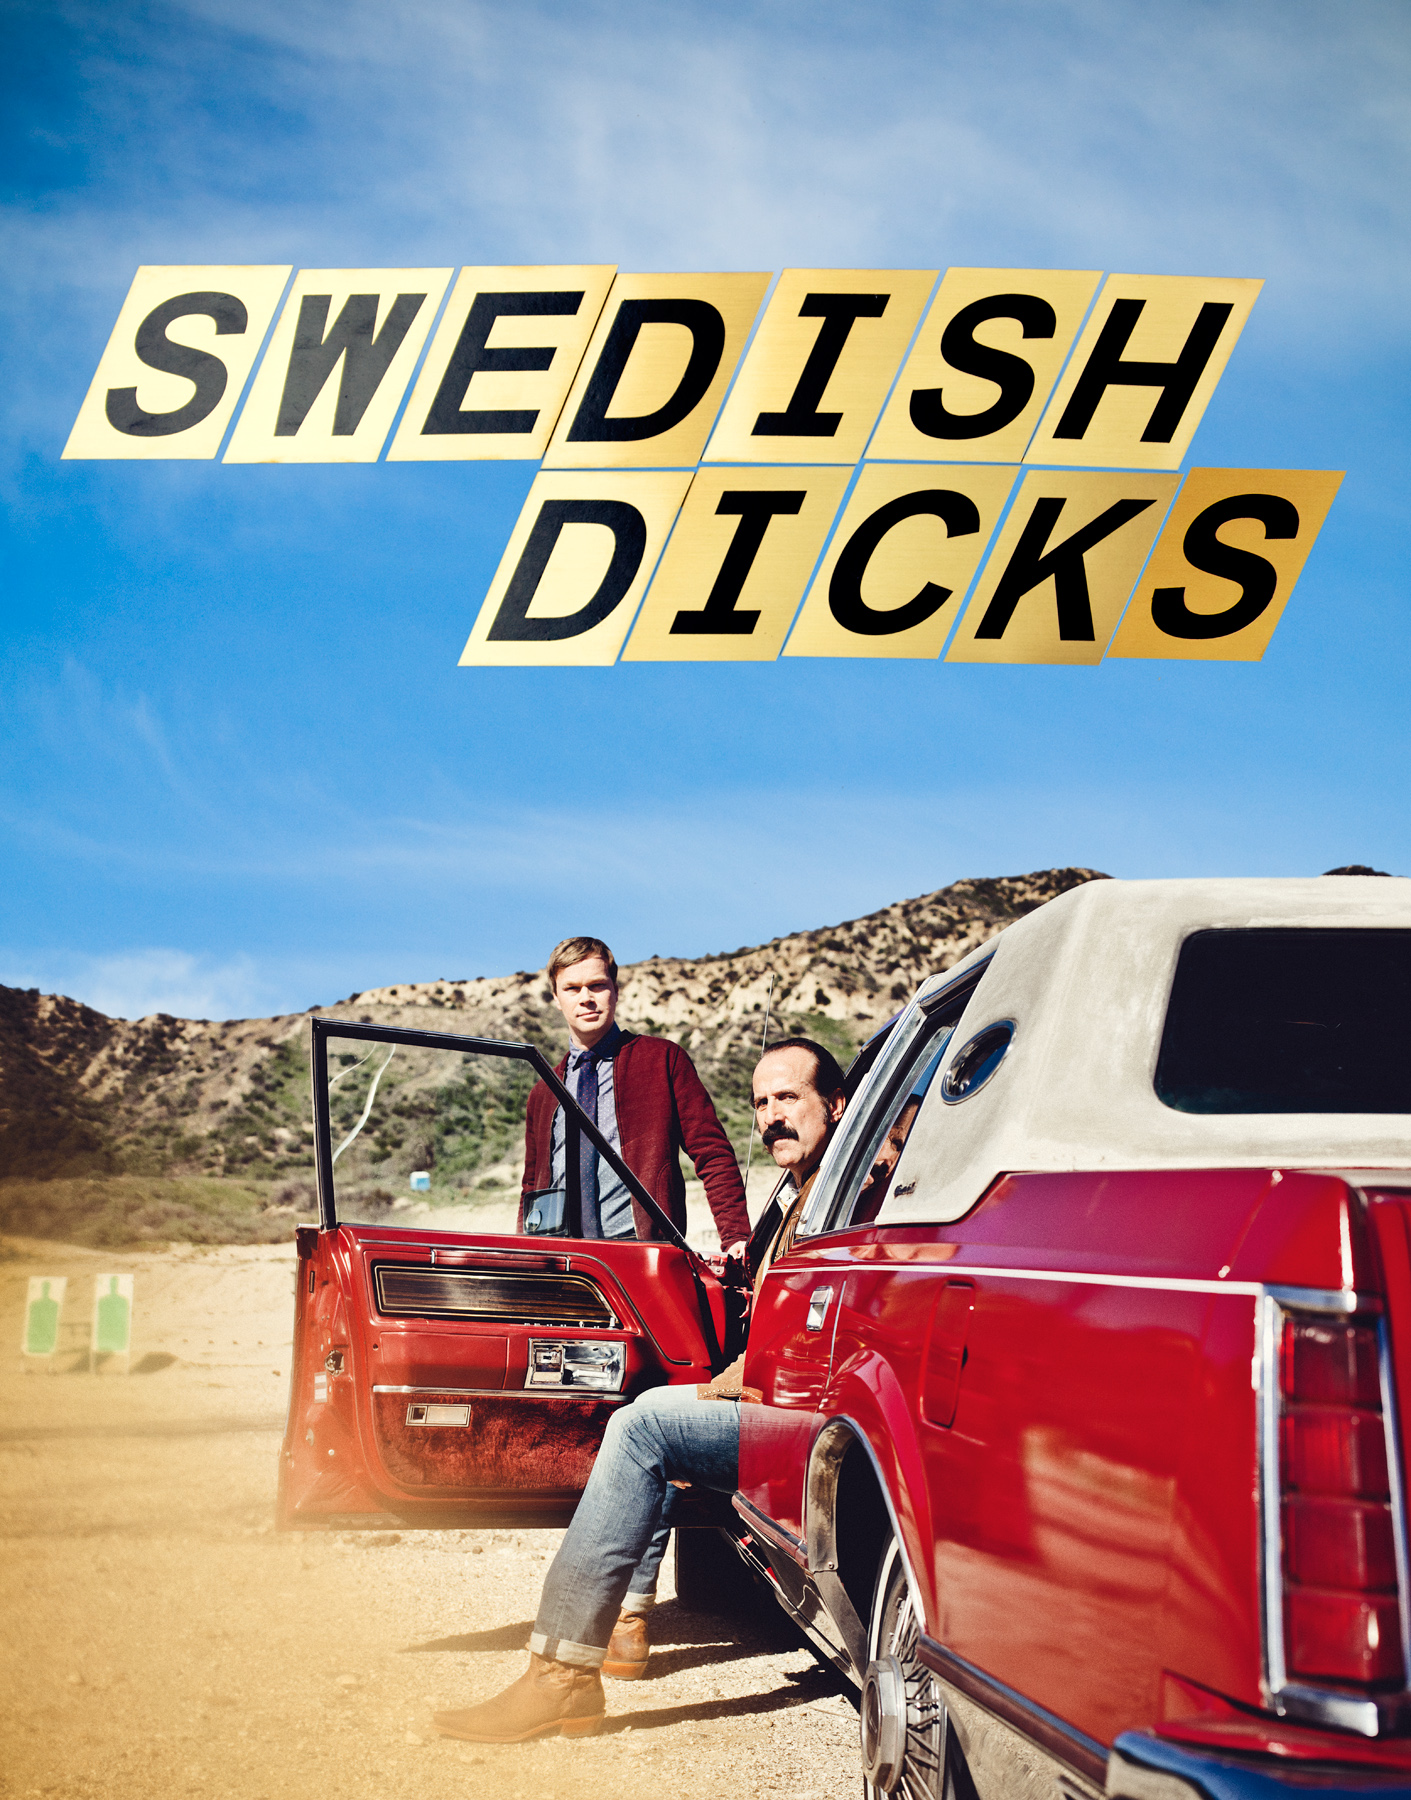 Swedish dicks poster